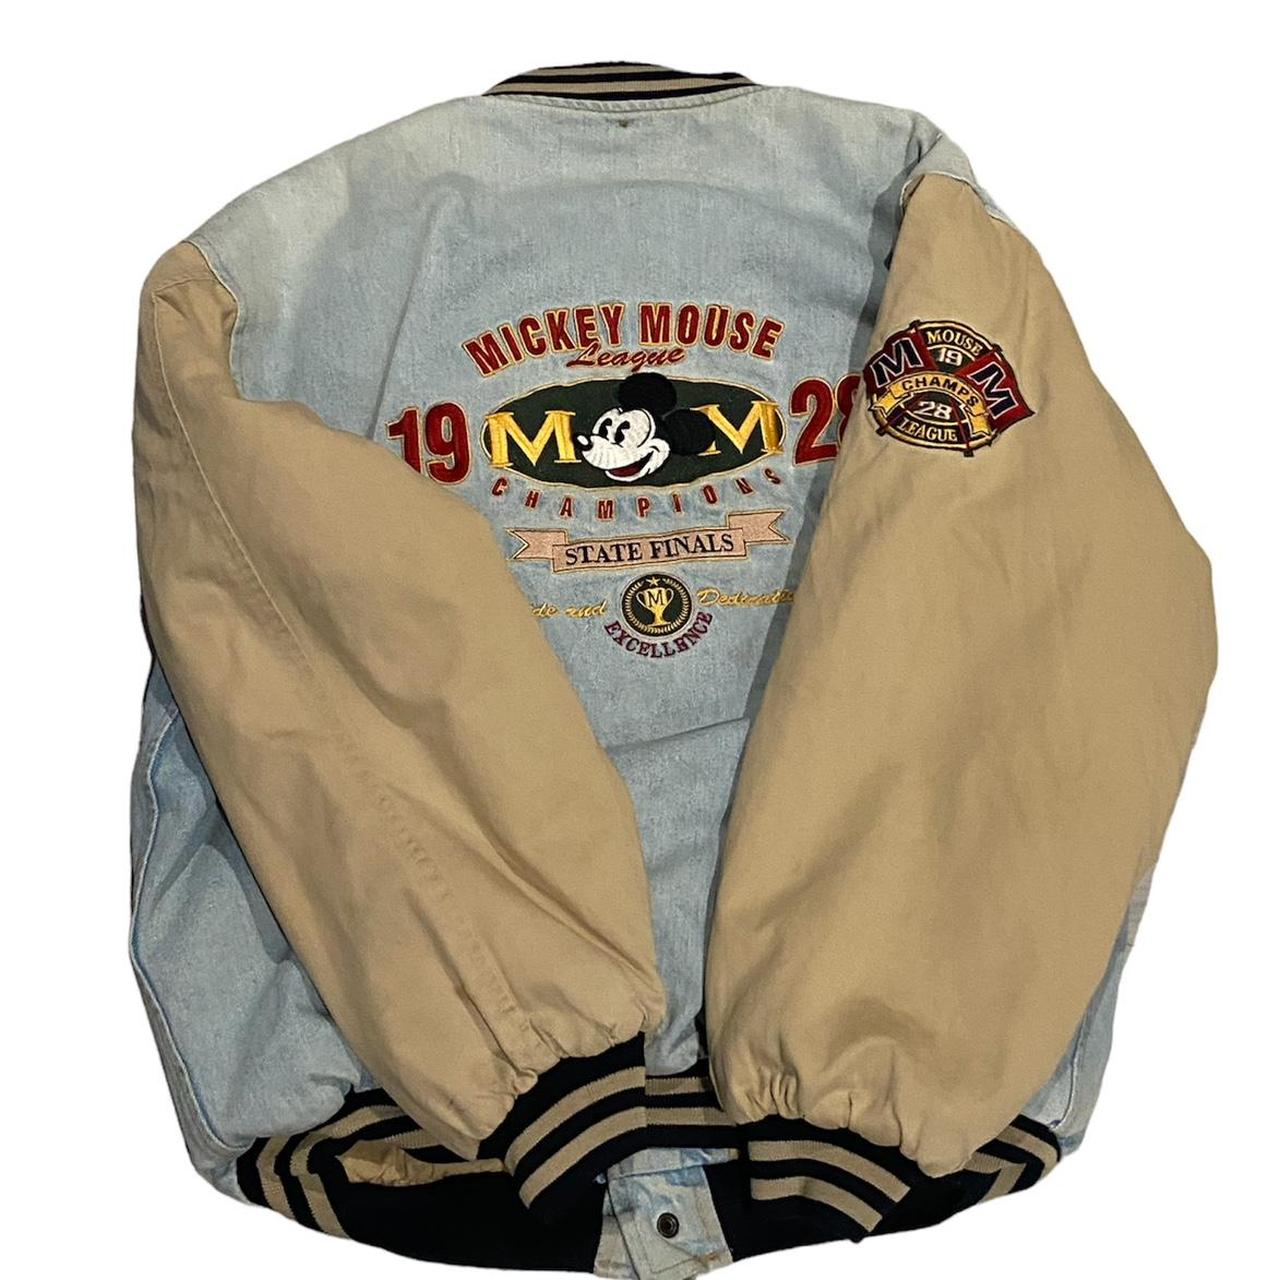 Whitesville Varsity Jacket 1986 Louisville - Depop